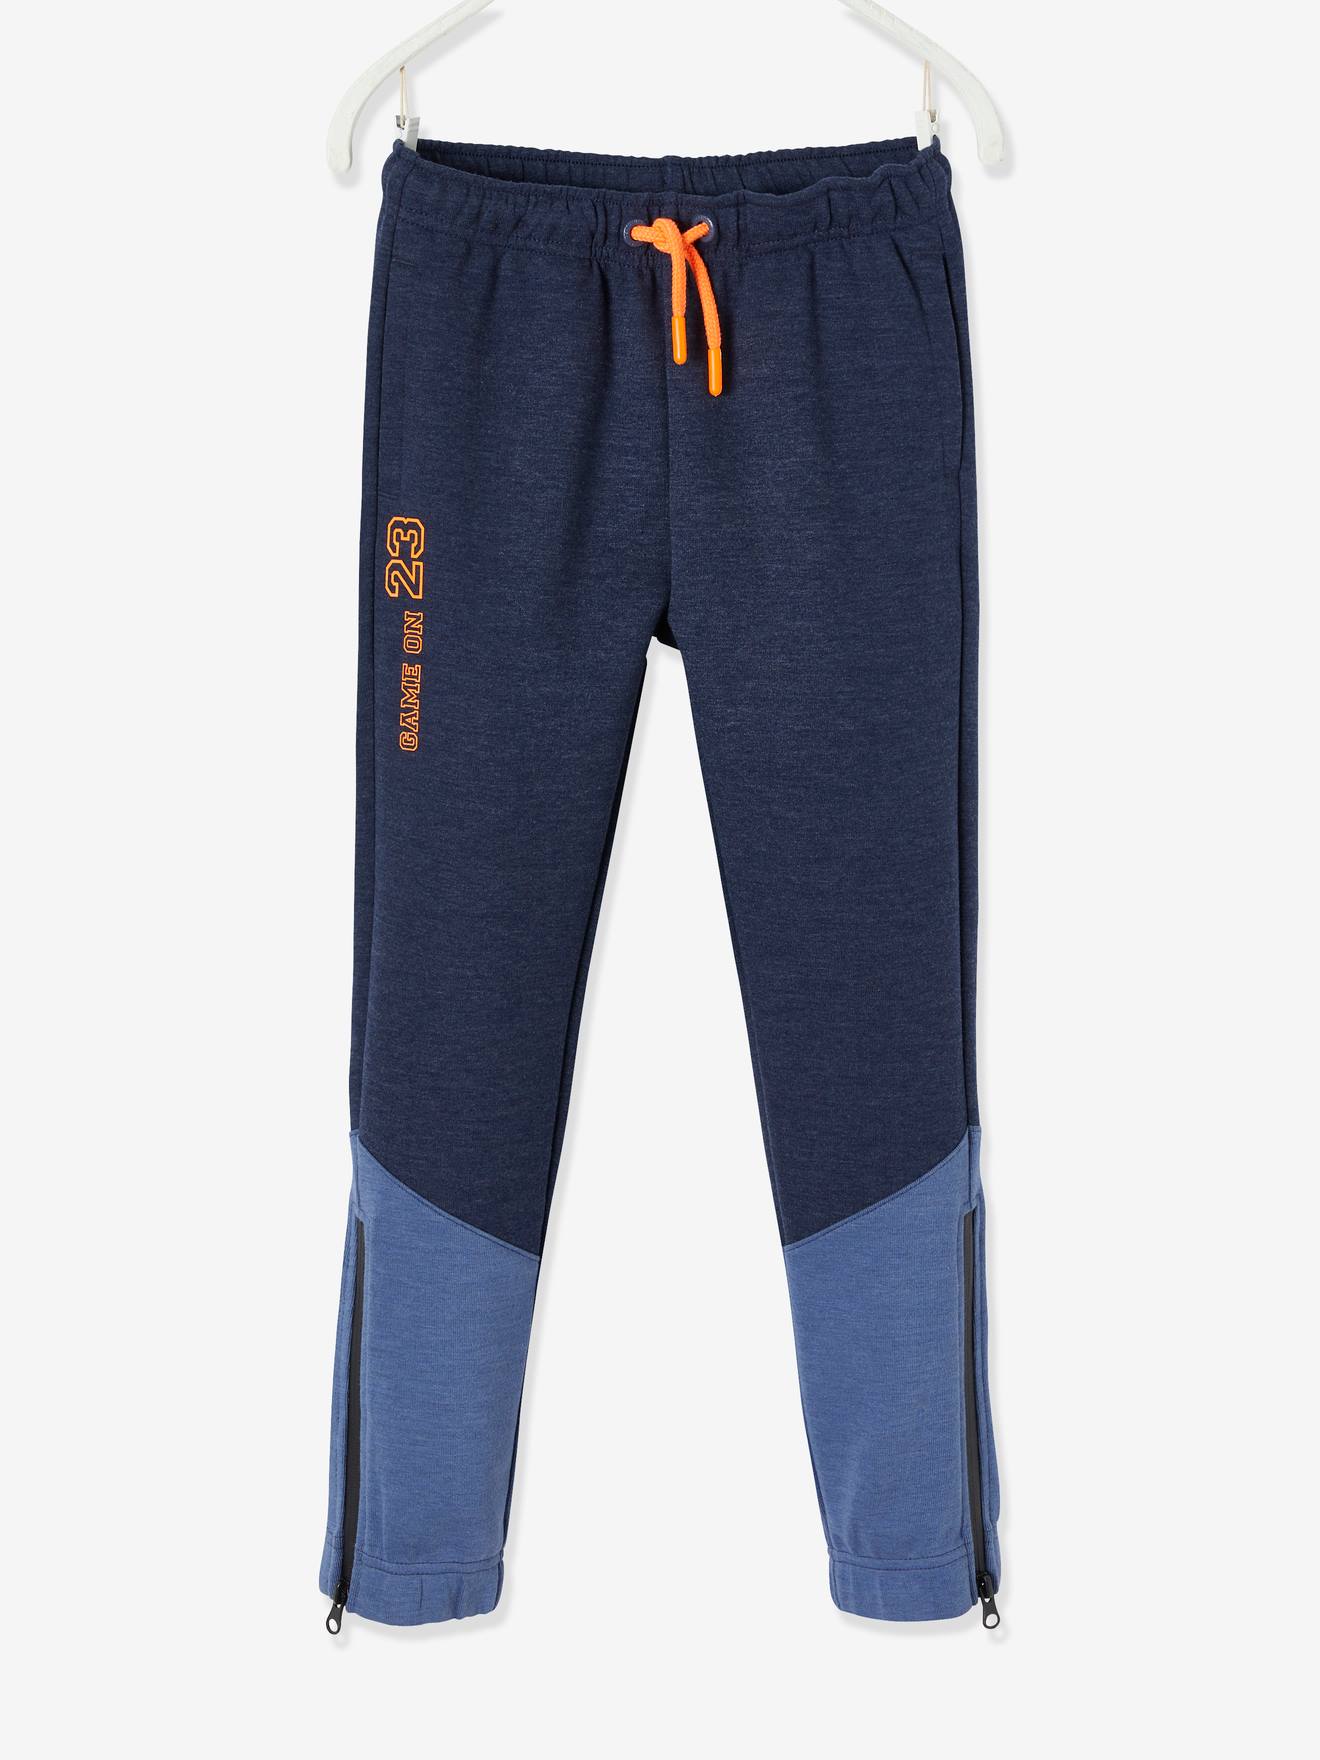 Pantalon de sport garçon en matière technique détails fluo bleu